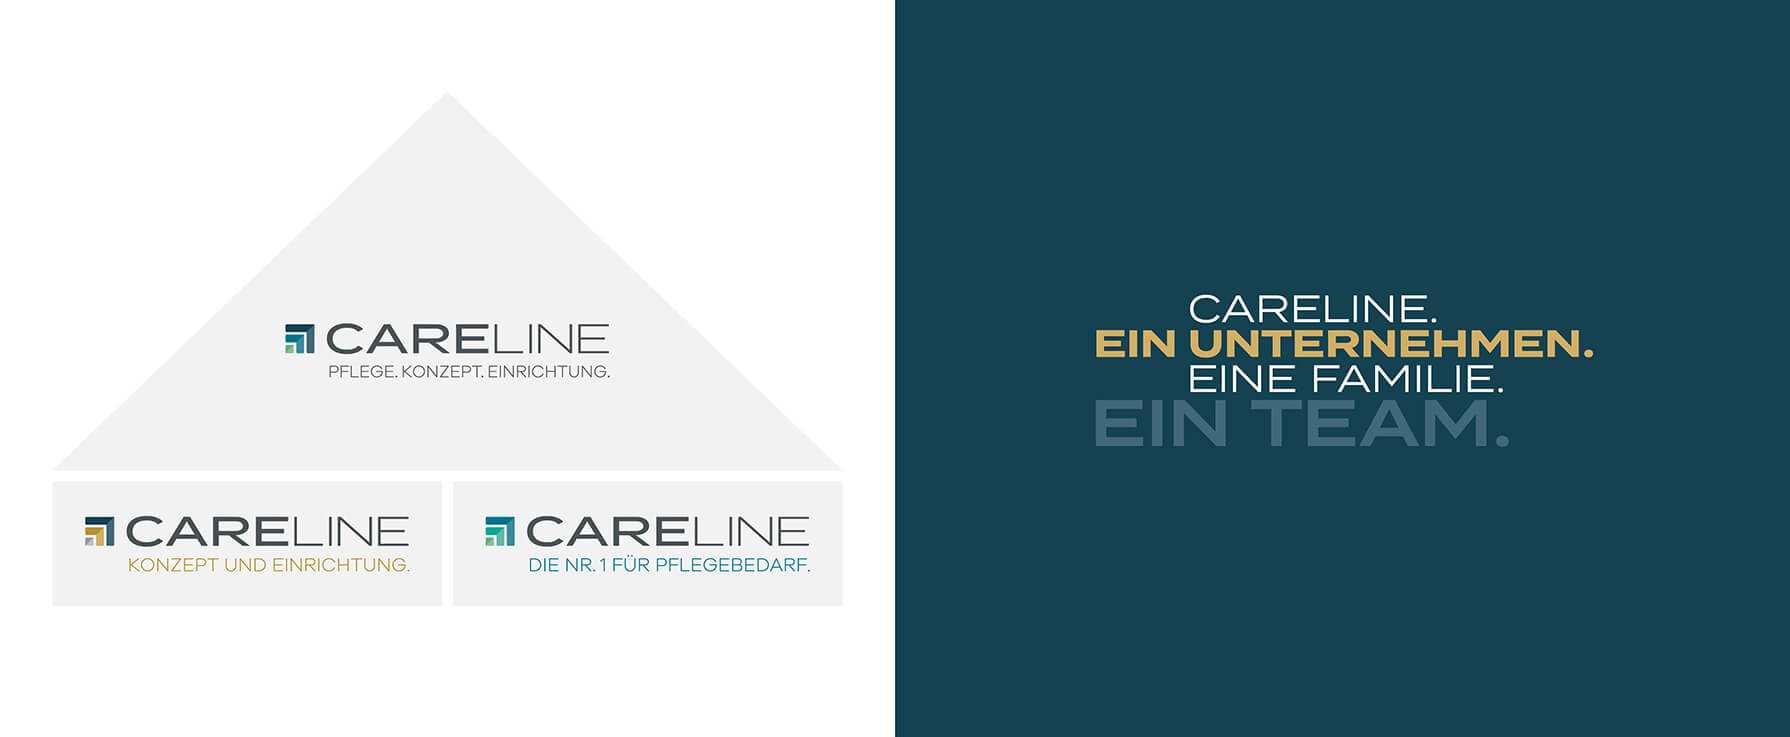 02_Careline_Branding_Markenarchitektur_Breiter-Header.jpg